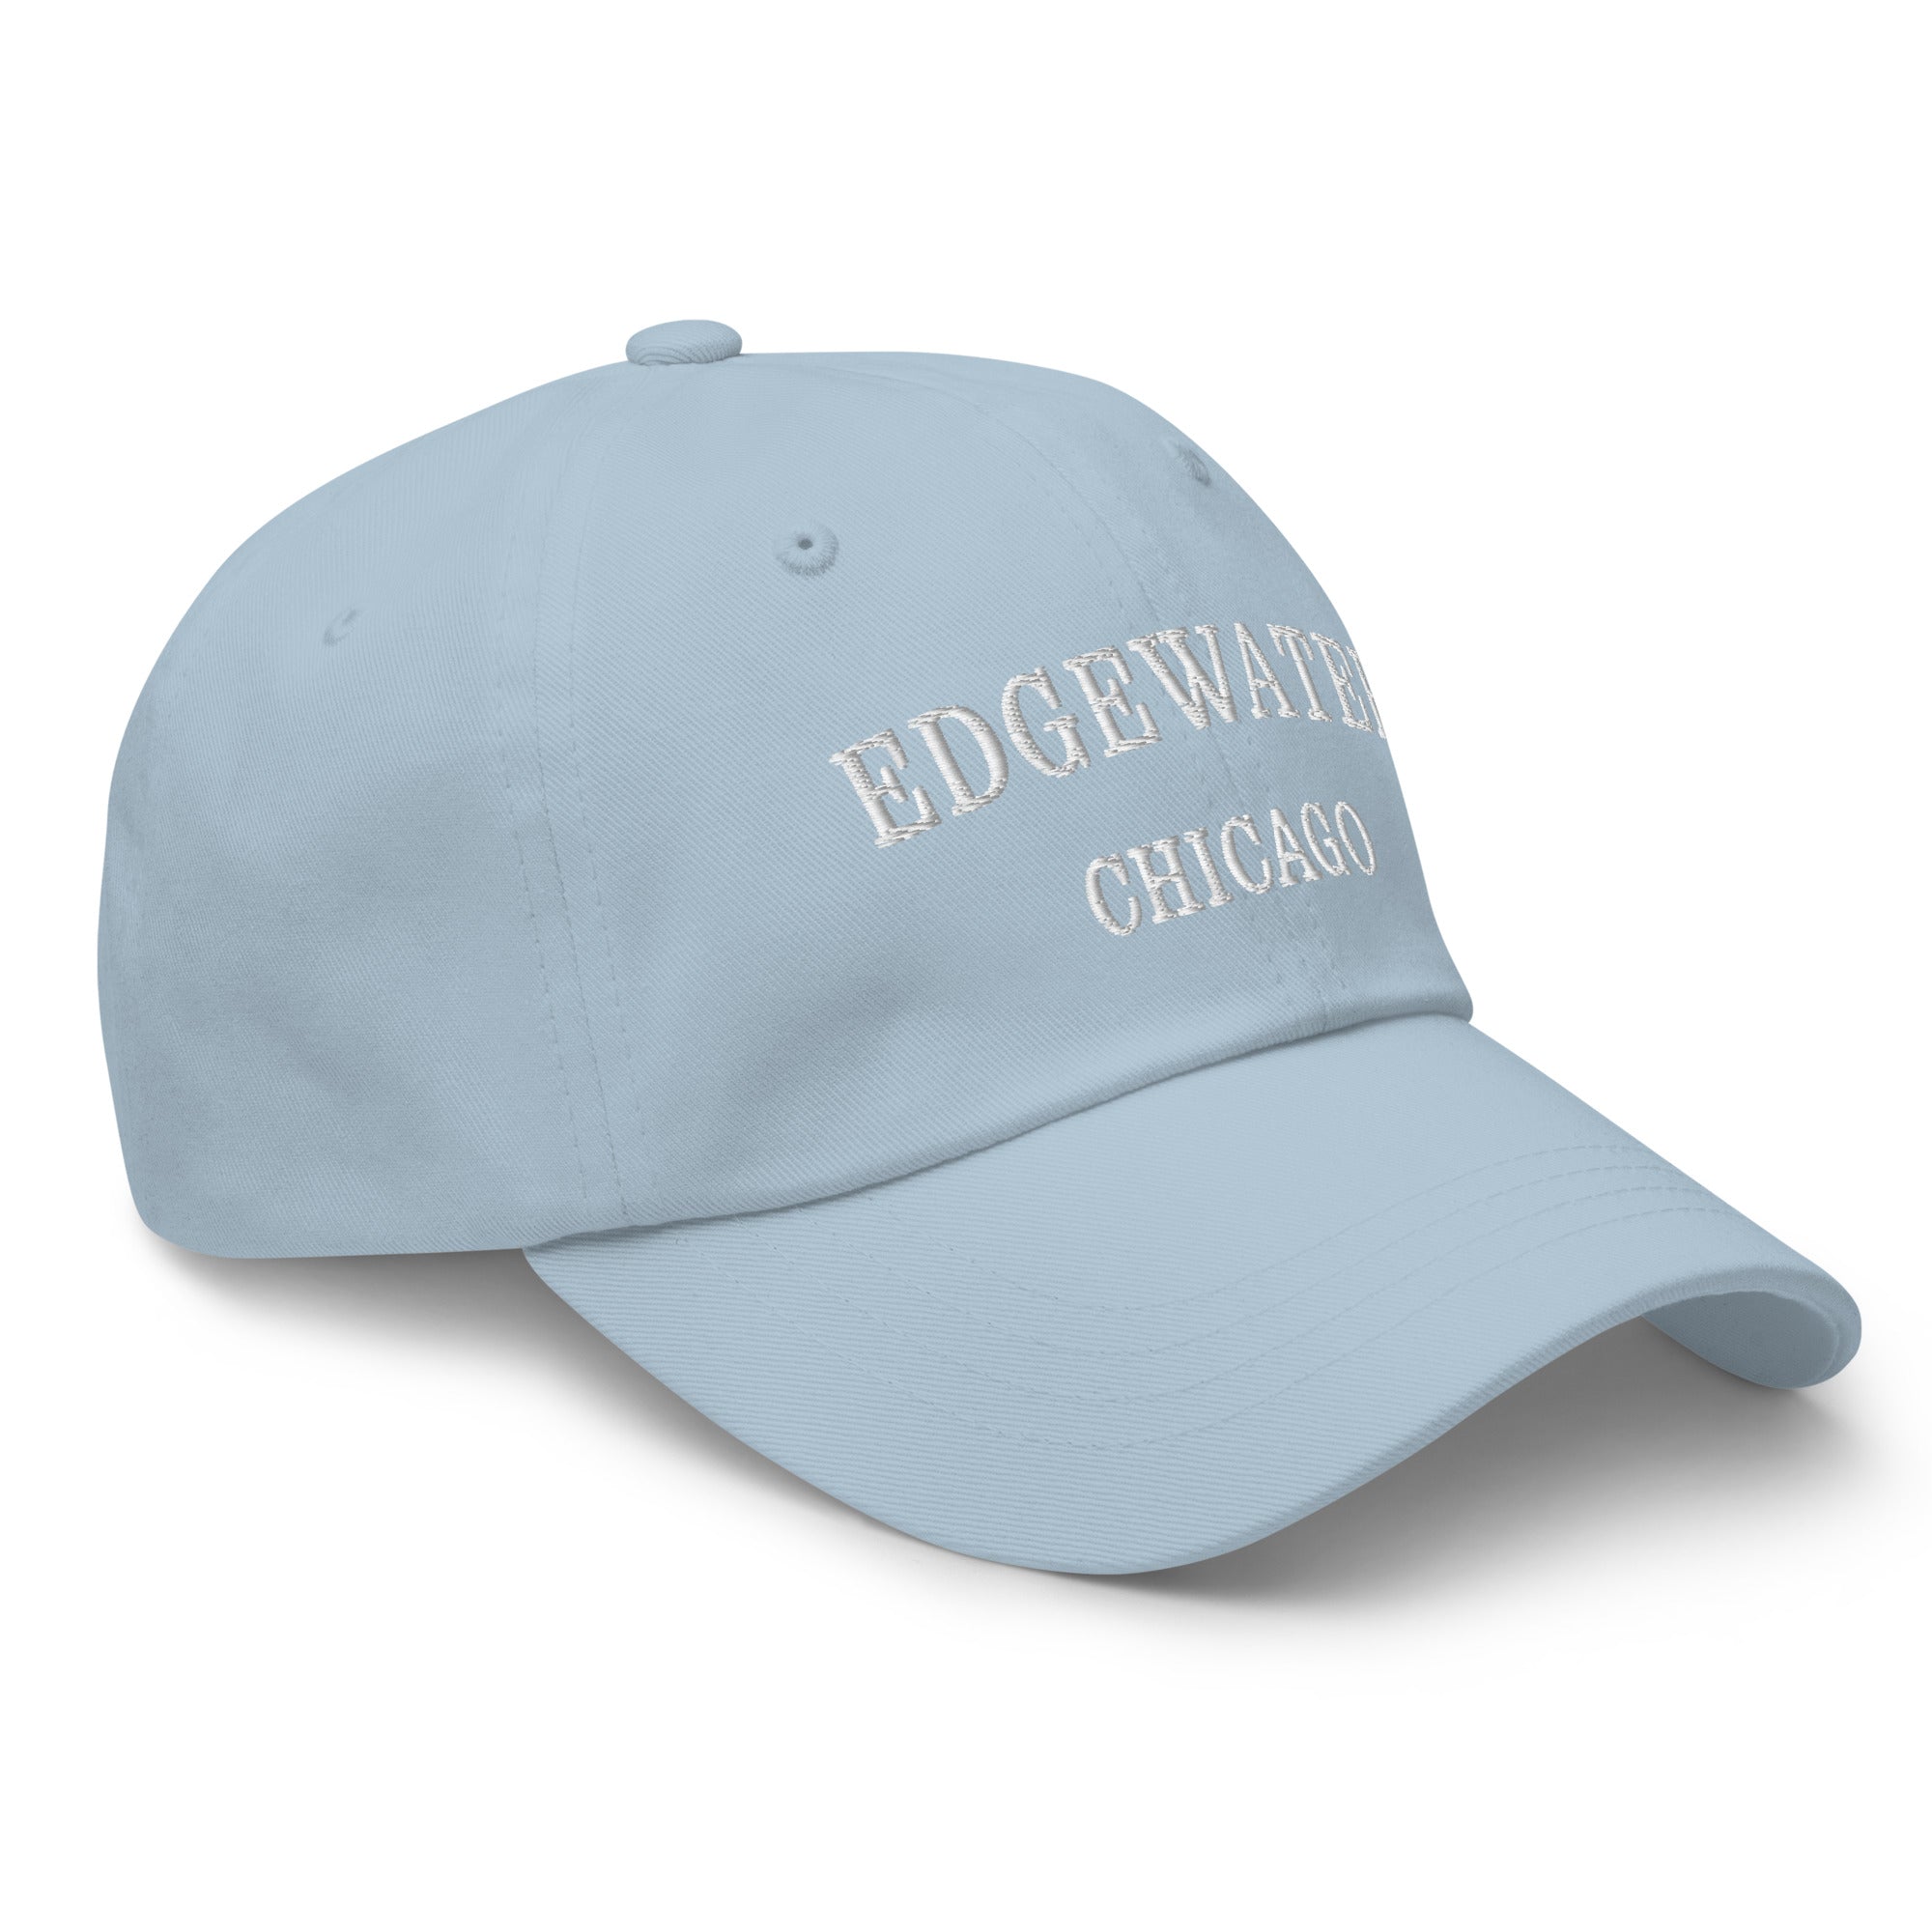 Edgewater Chicago Dad Hat